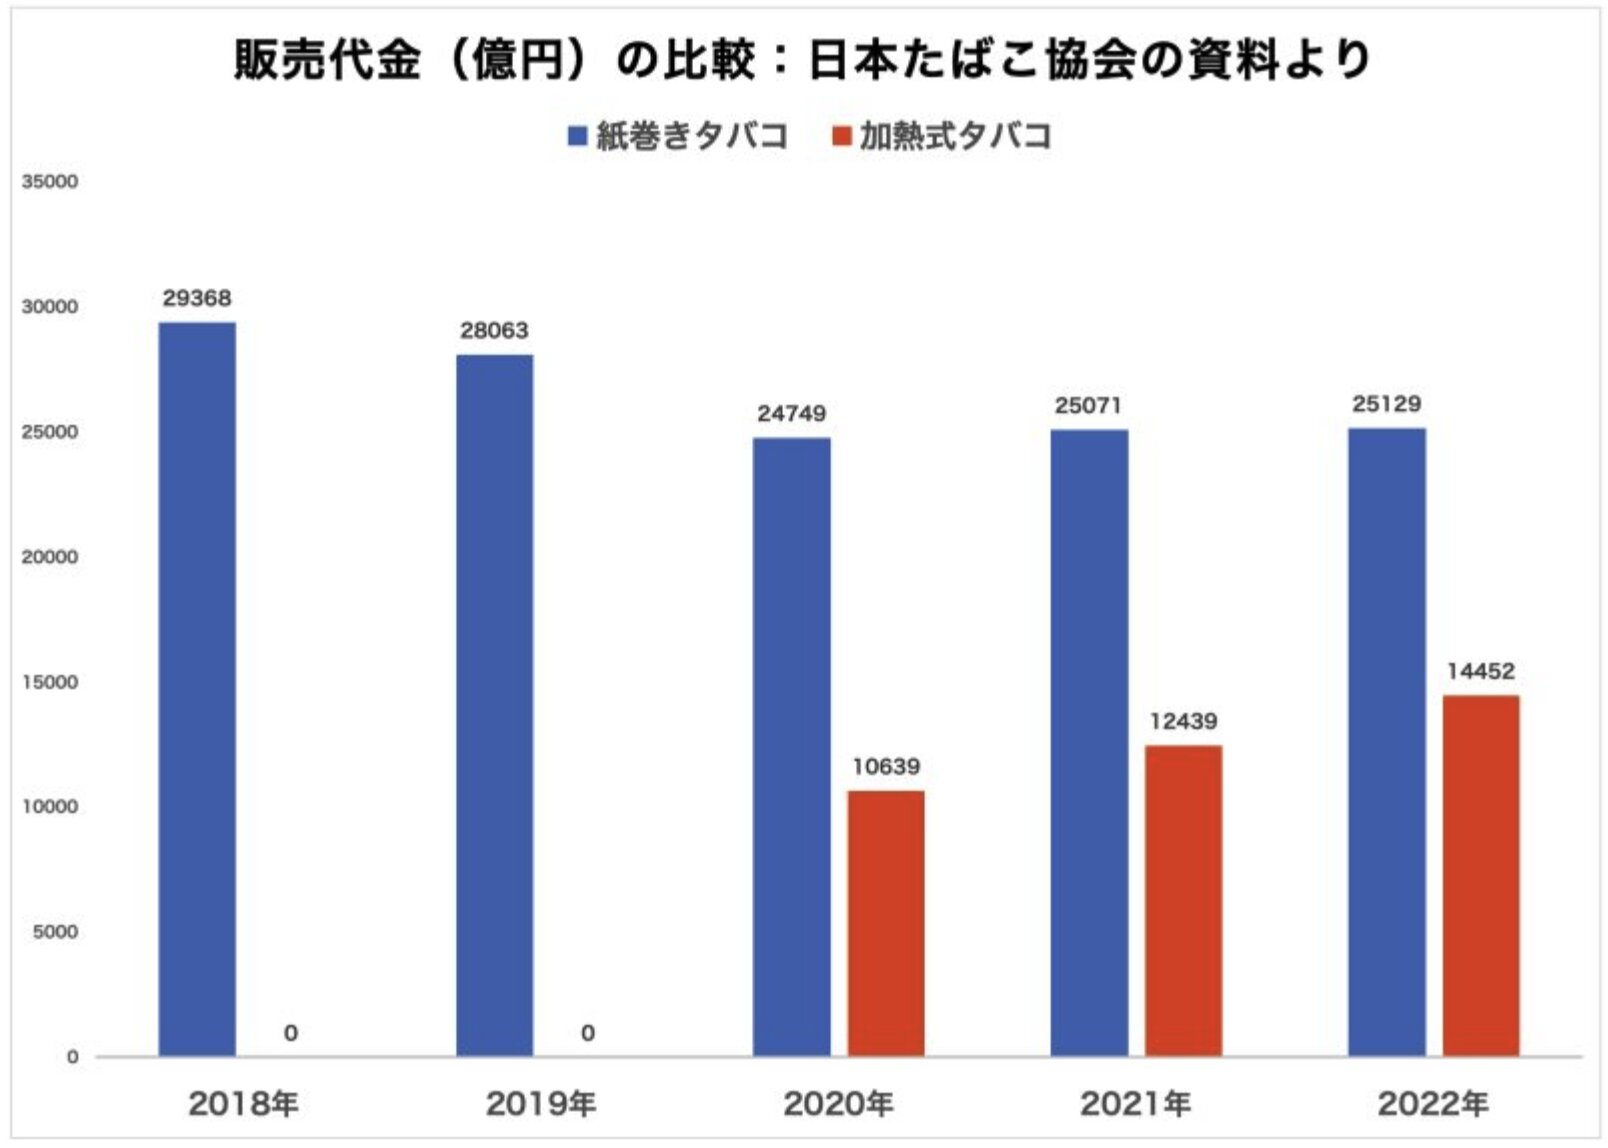 日本国内のタバコ製品の販売代金の推移。タバコ増税と価格上昇によって紙巻きタバコの販売代金は横ばいだが、加熱式タバコは右肩上がりになっている。日本たばこ協会の資料より